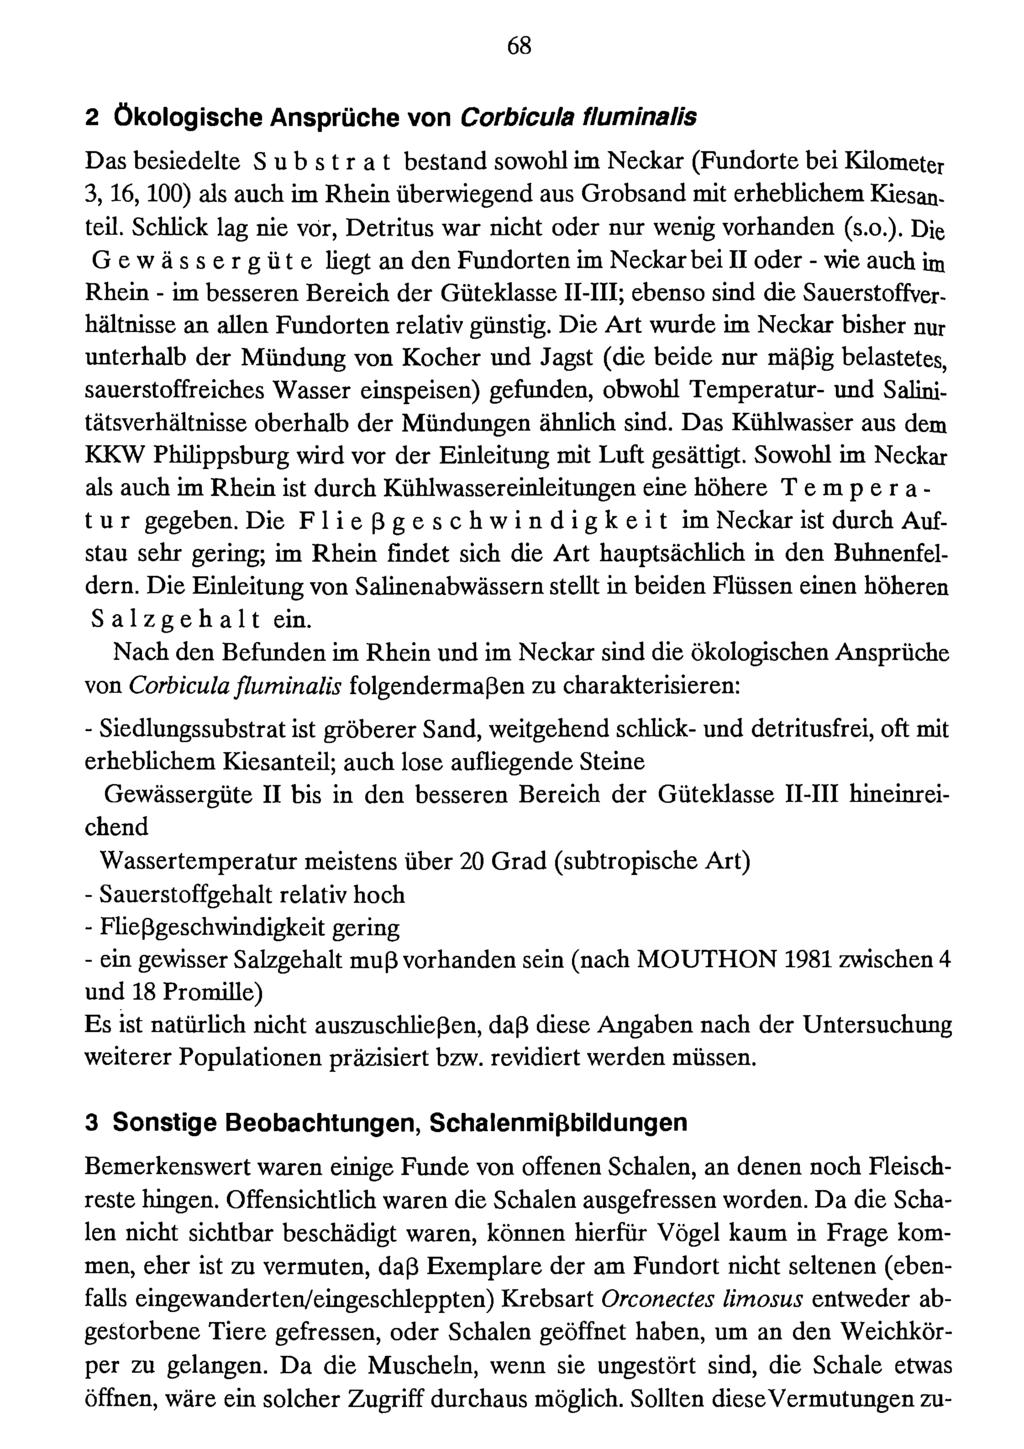 68 2 Ökologische Ansprüche von Corbicula fluminalis Das besiedelte Substrat bestand sowohl im Neckar (Fundorte bei Kilometer 3,16,100) als auch im Rhein überwiegend aus Grobsand mit erheblichem